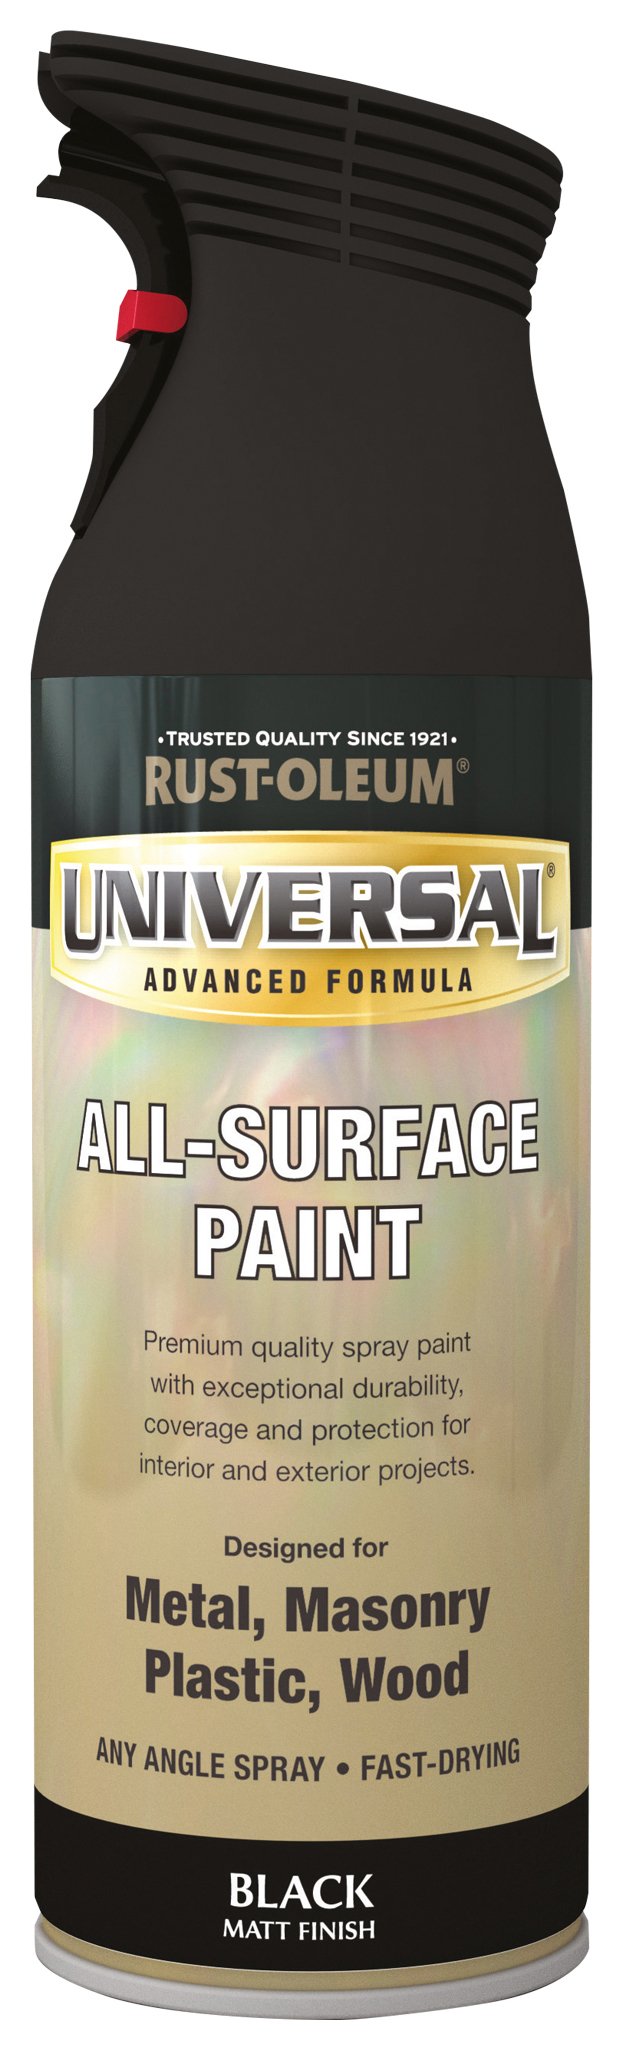 Rust-Oleum All Surface Spray Paint 400ml - Matt Black Review